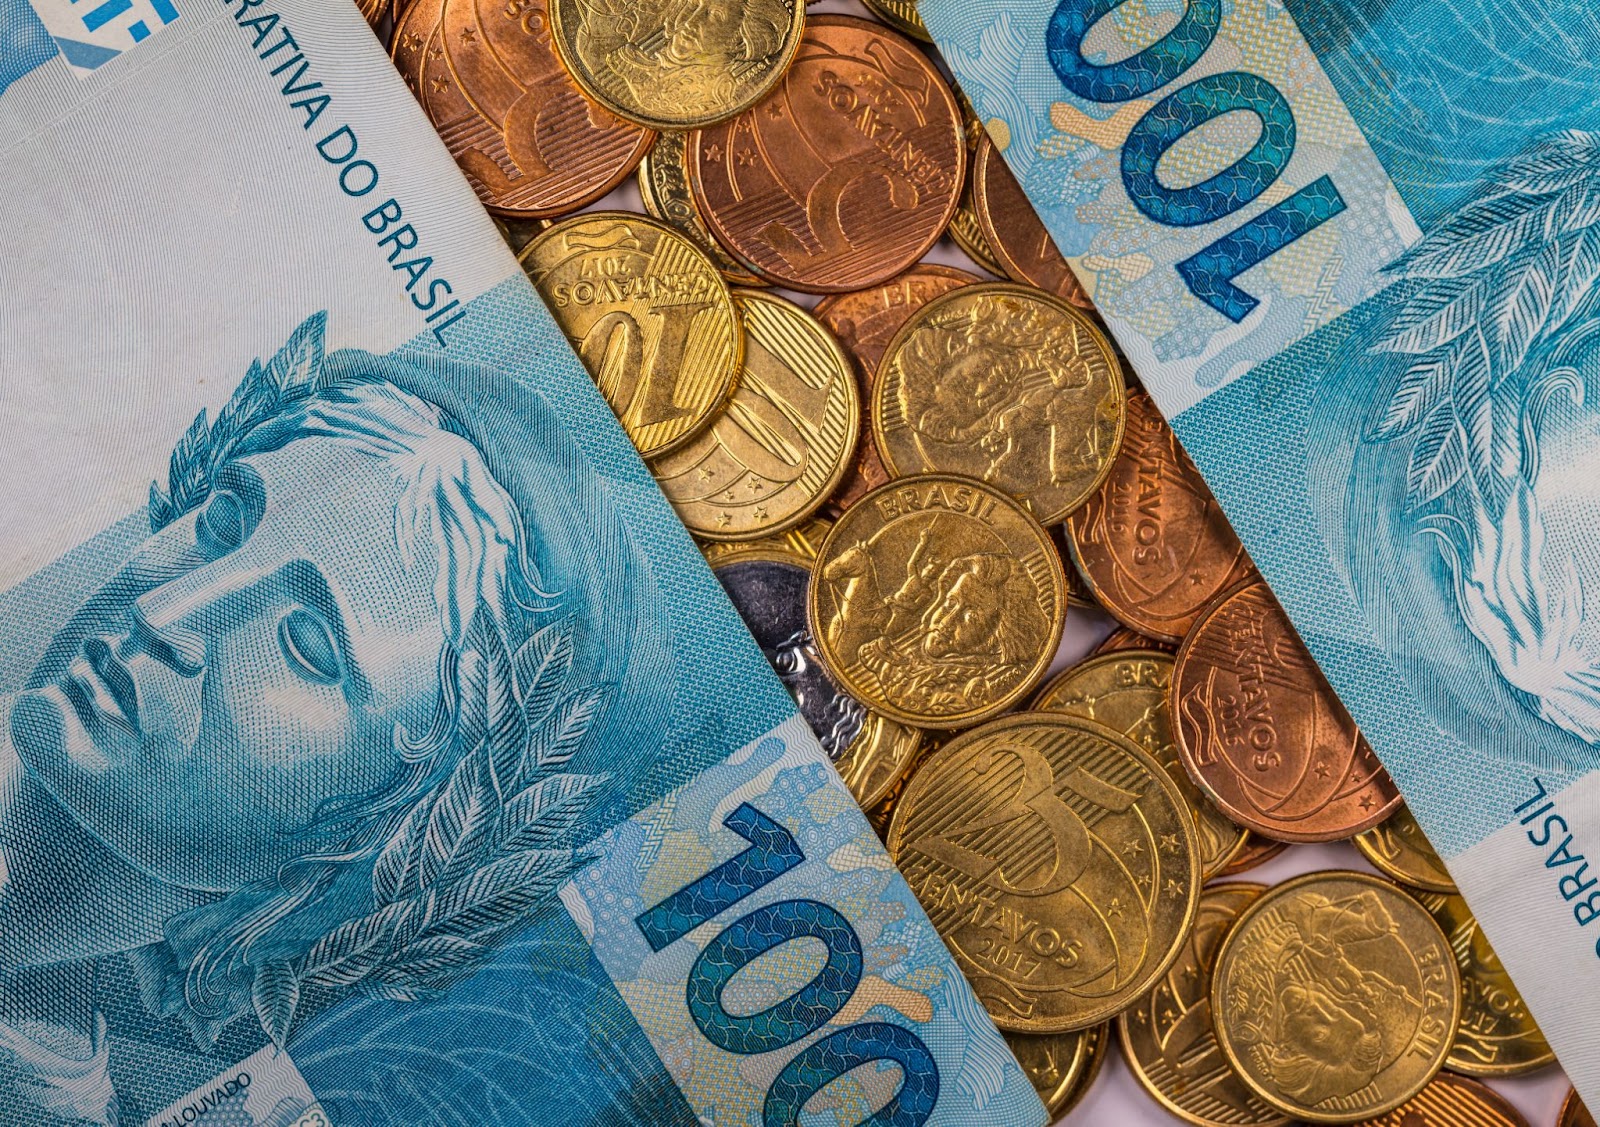 Imagem de duas cédulas de R$ 100,00 e diversas moedas de 5, 10 e 25 centavos.